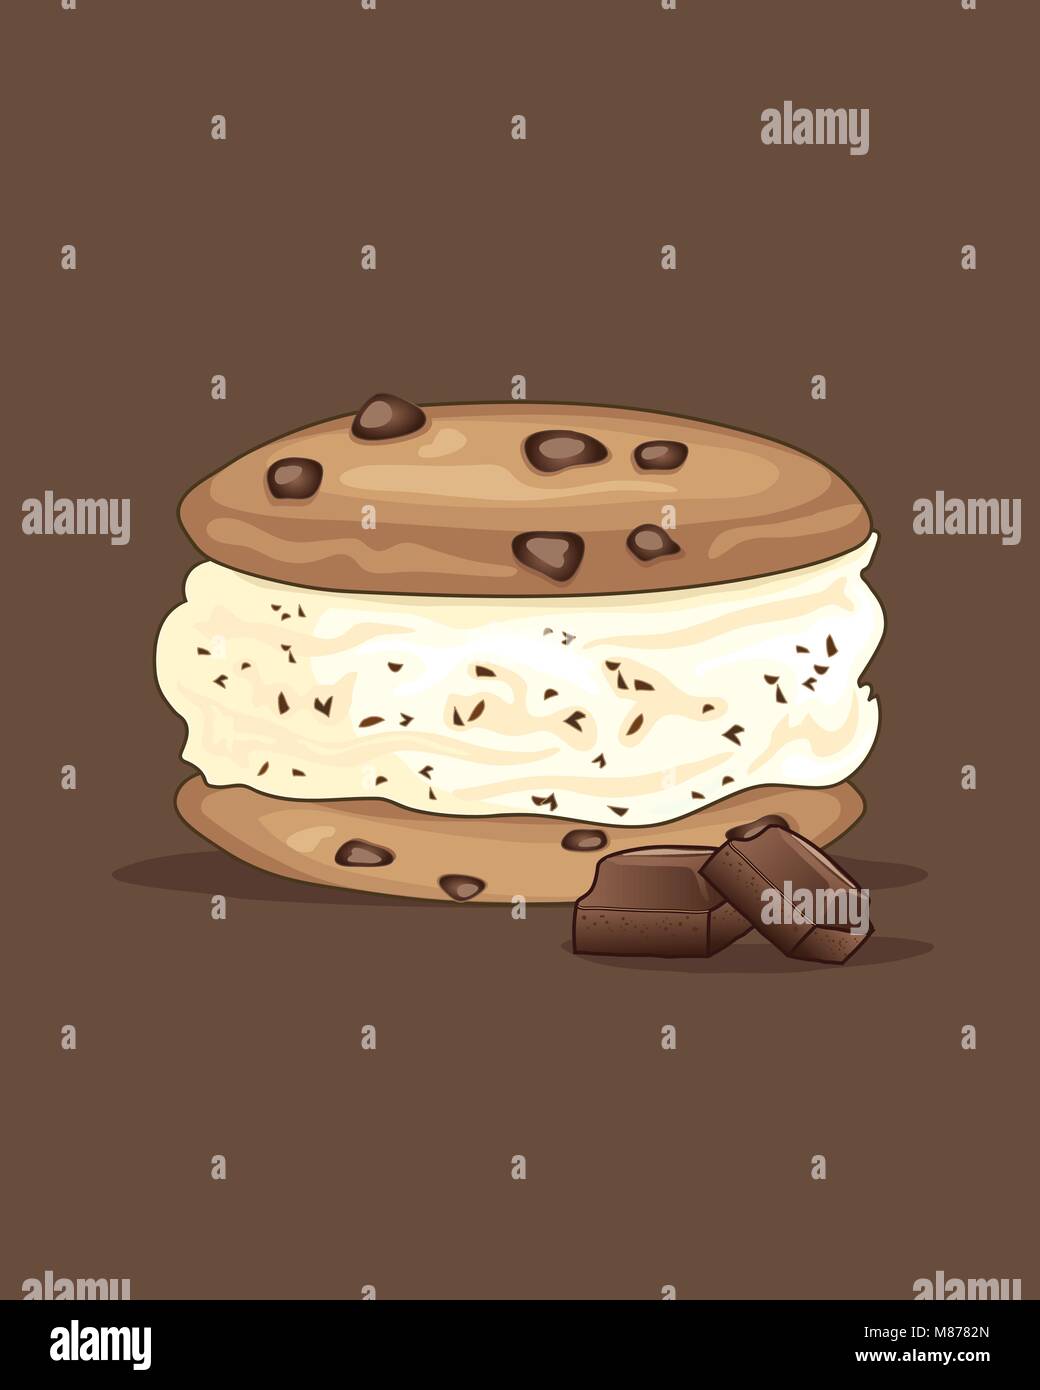 Un vecteur illustration en eps 10 format d'un délicieux cool ice cream sandwich avec des cookies aux pépites de chocolat et crème glacée à la vanille Illustration de Vecteur